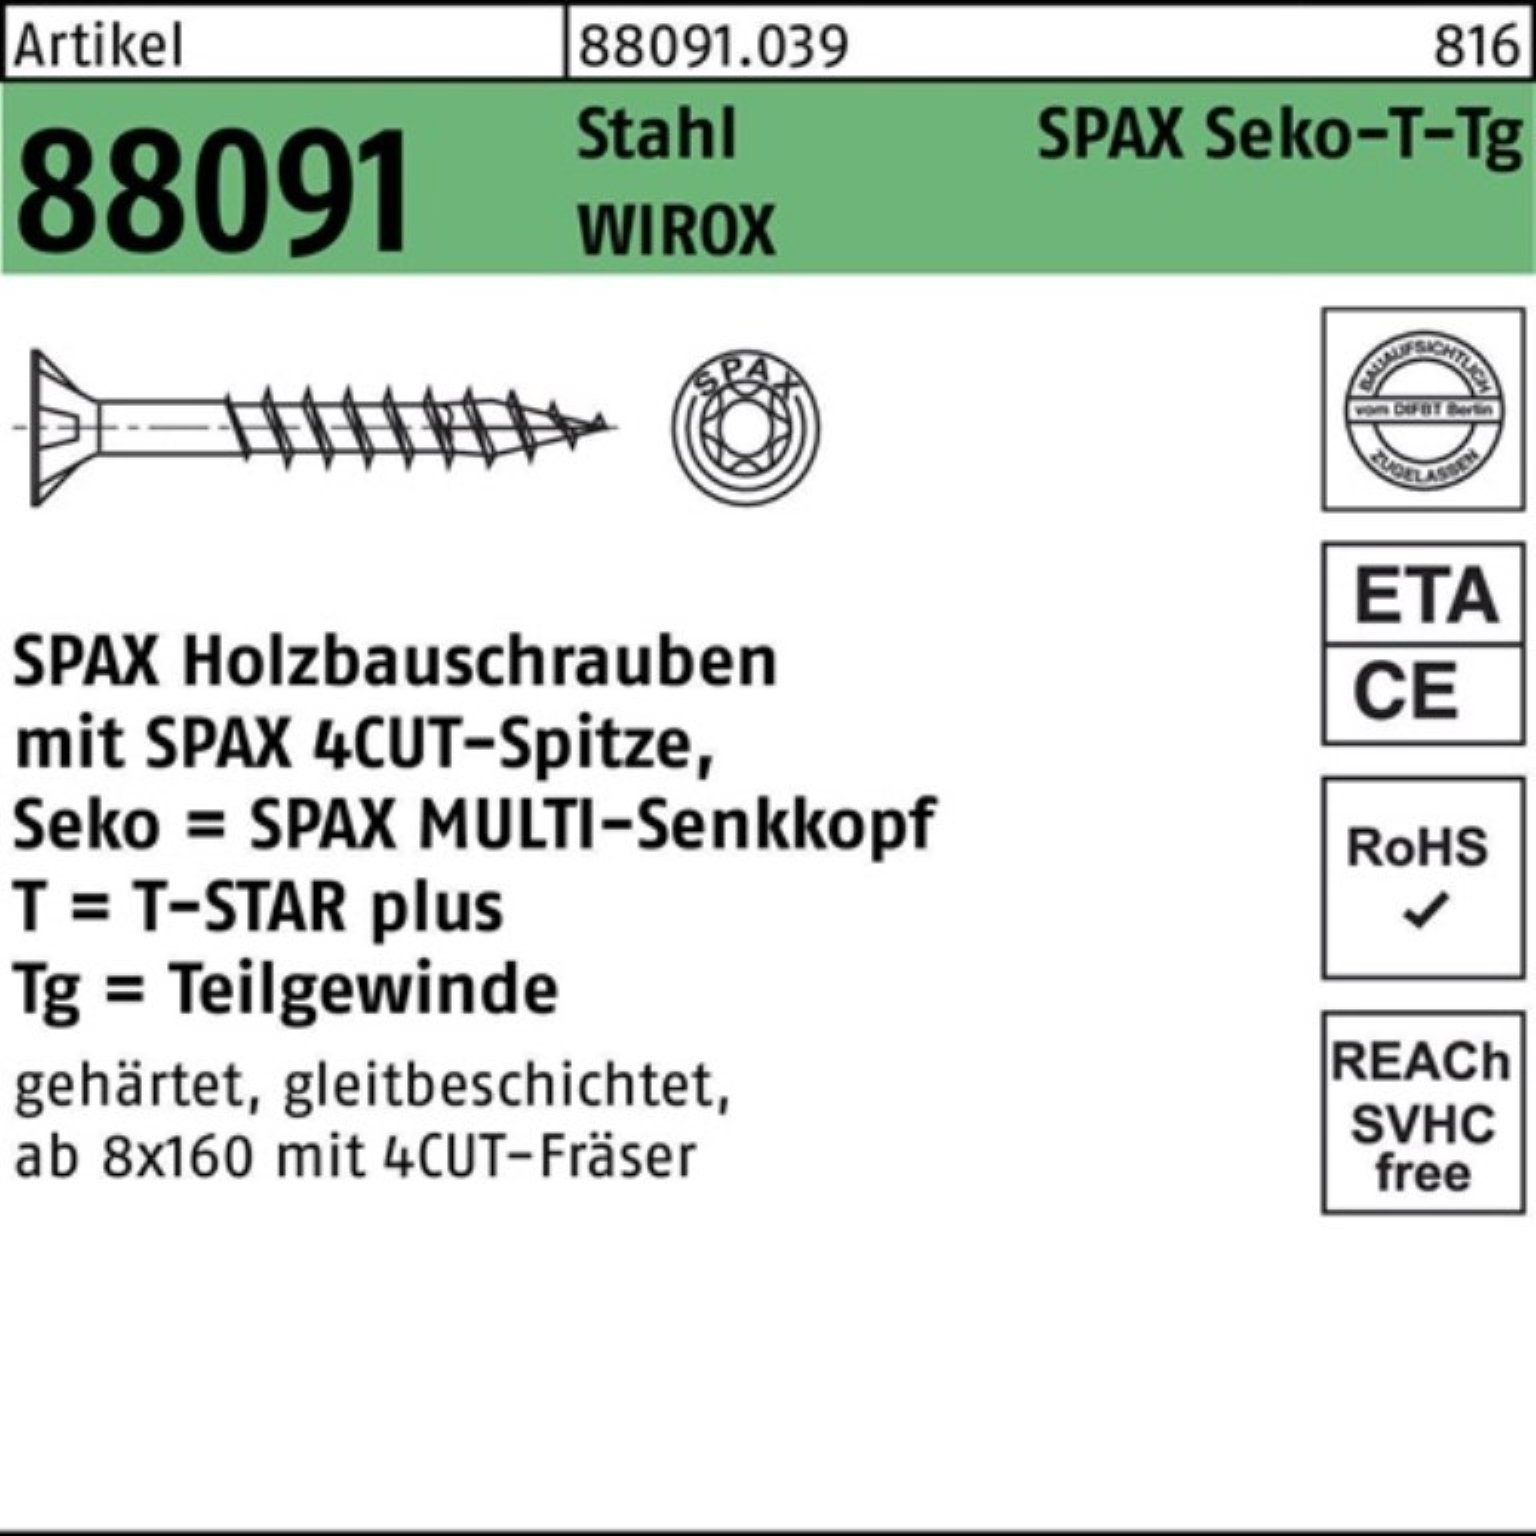 SPAX Schraube 100er Pack Schraube R 88091 SEKO/T-STAR TG 8x 360/80-T40 Stahl WIROX 5